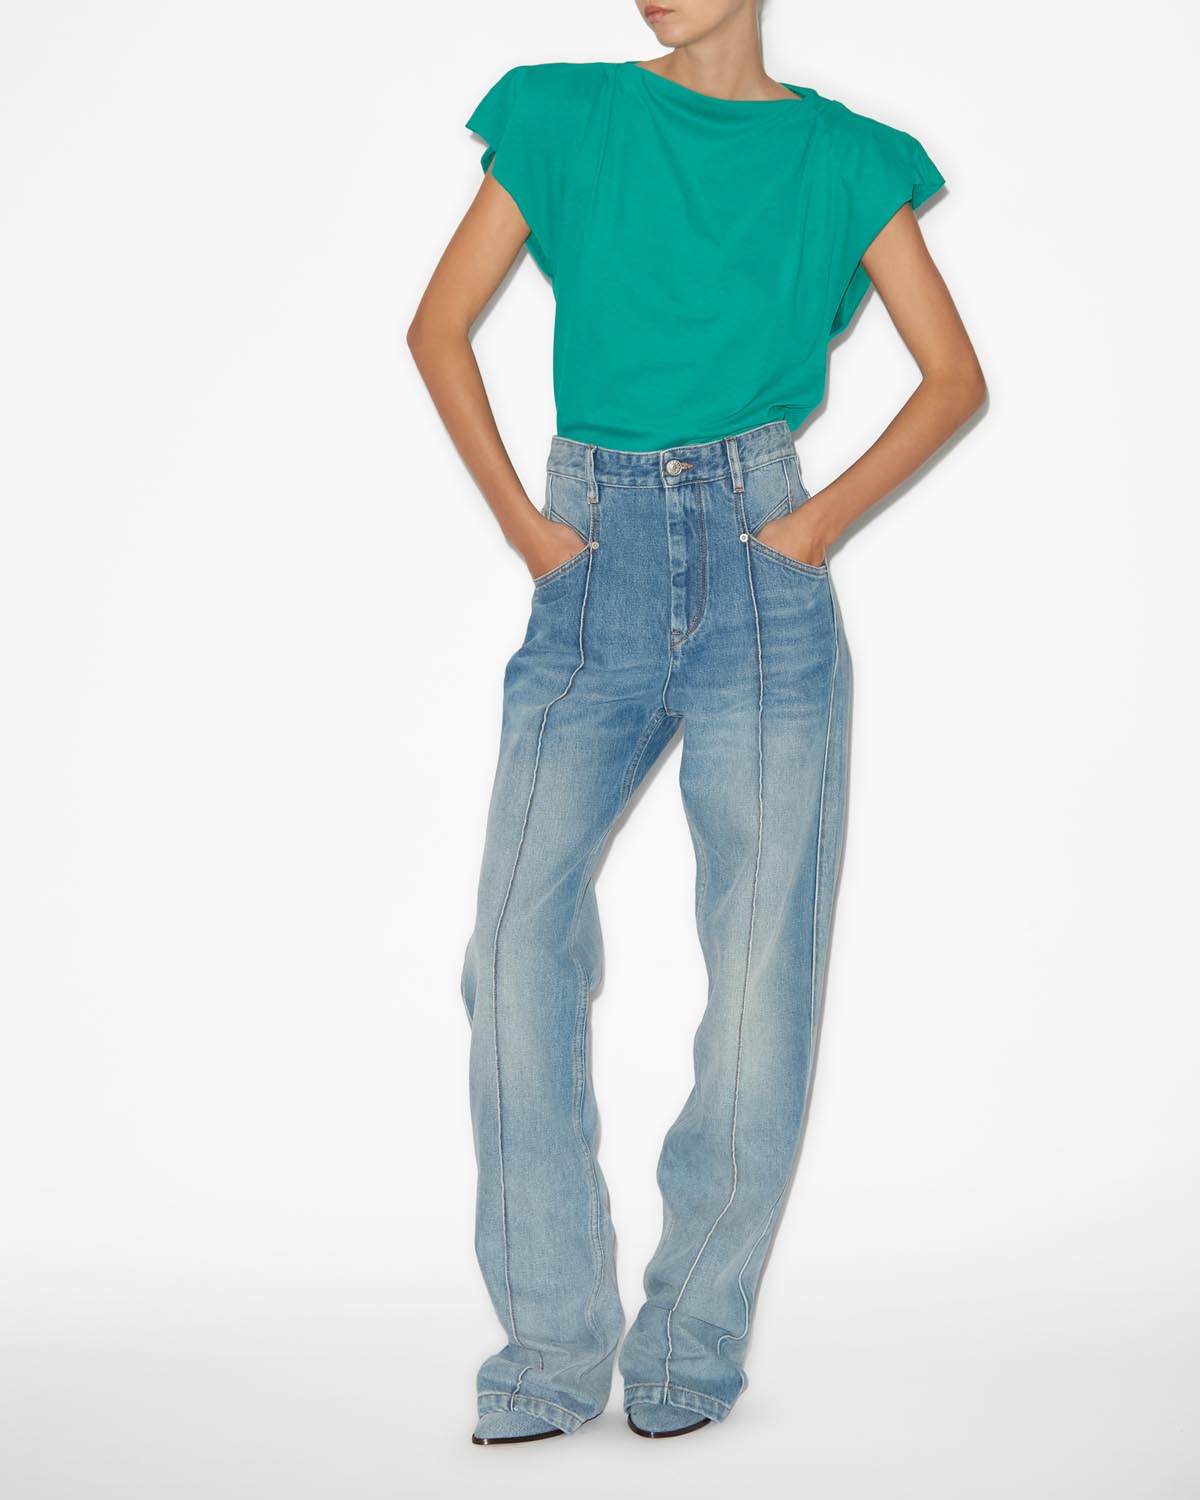 Sebani 티 셔츠 Woman Green 10